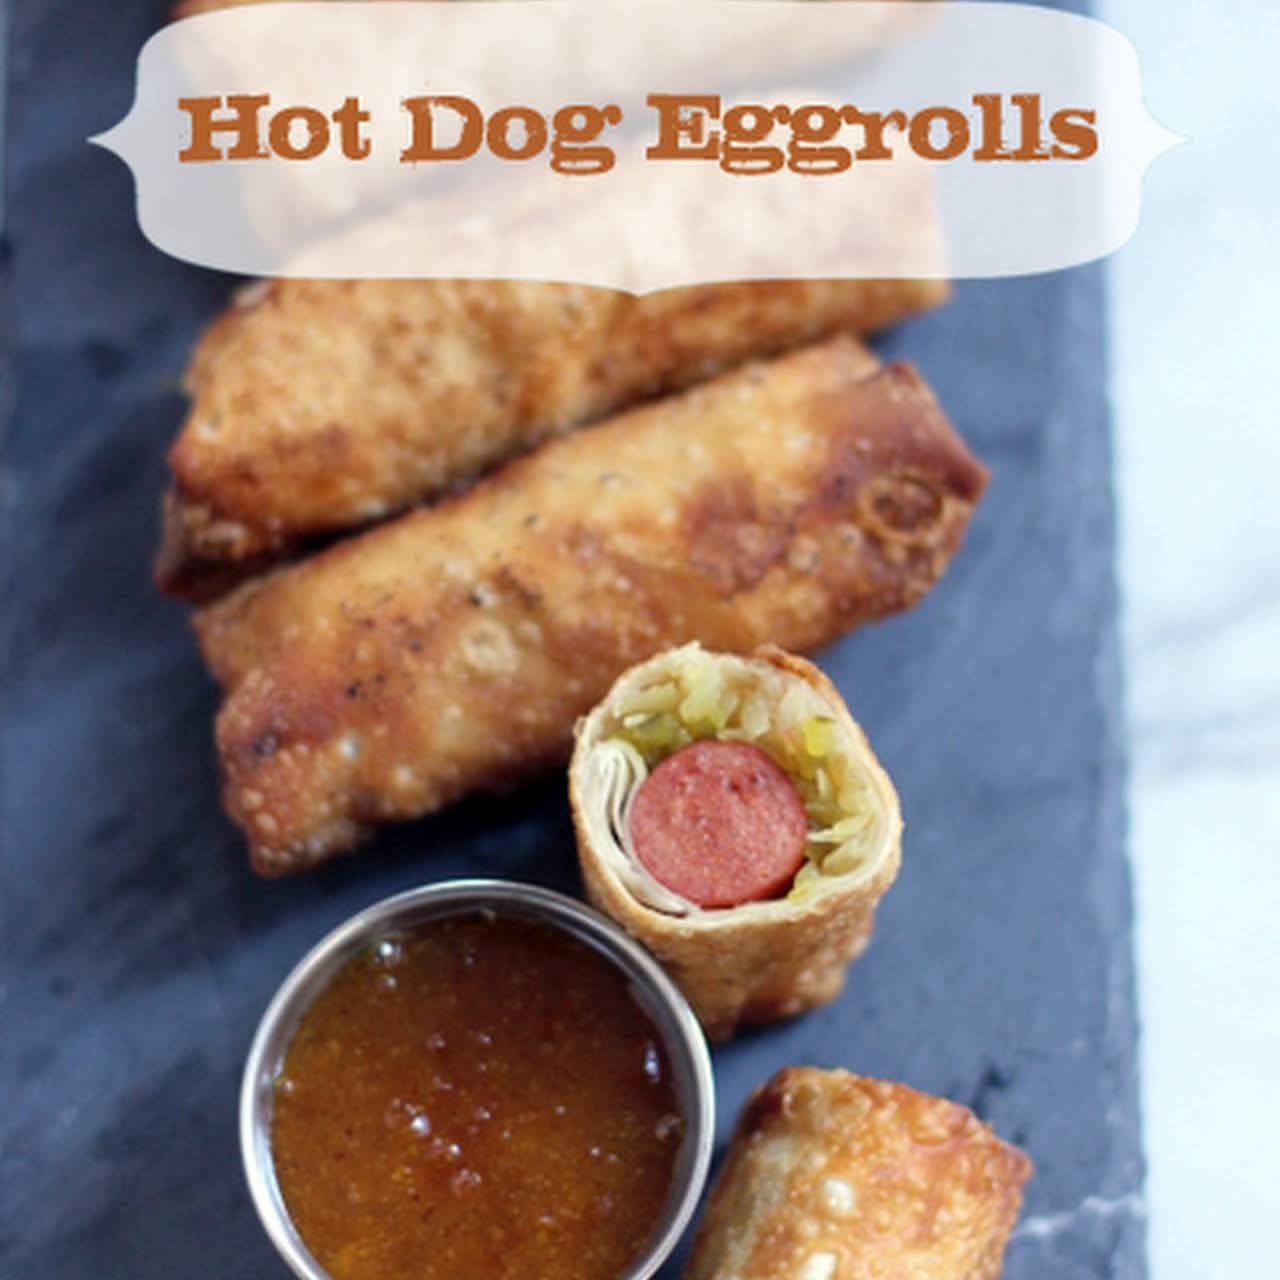 Hot Dog Eggrolls